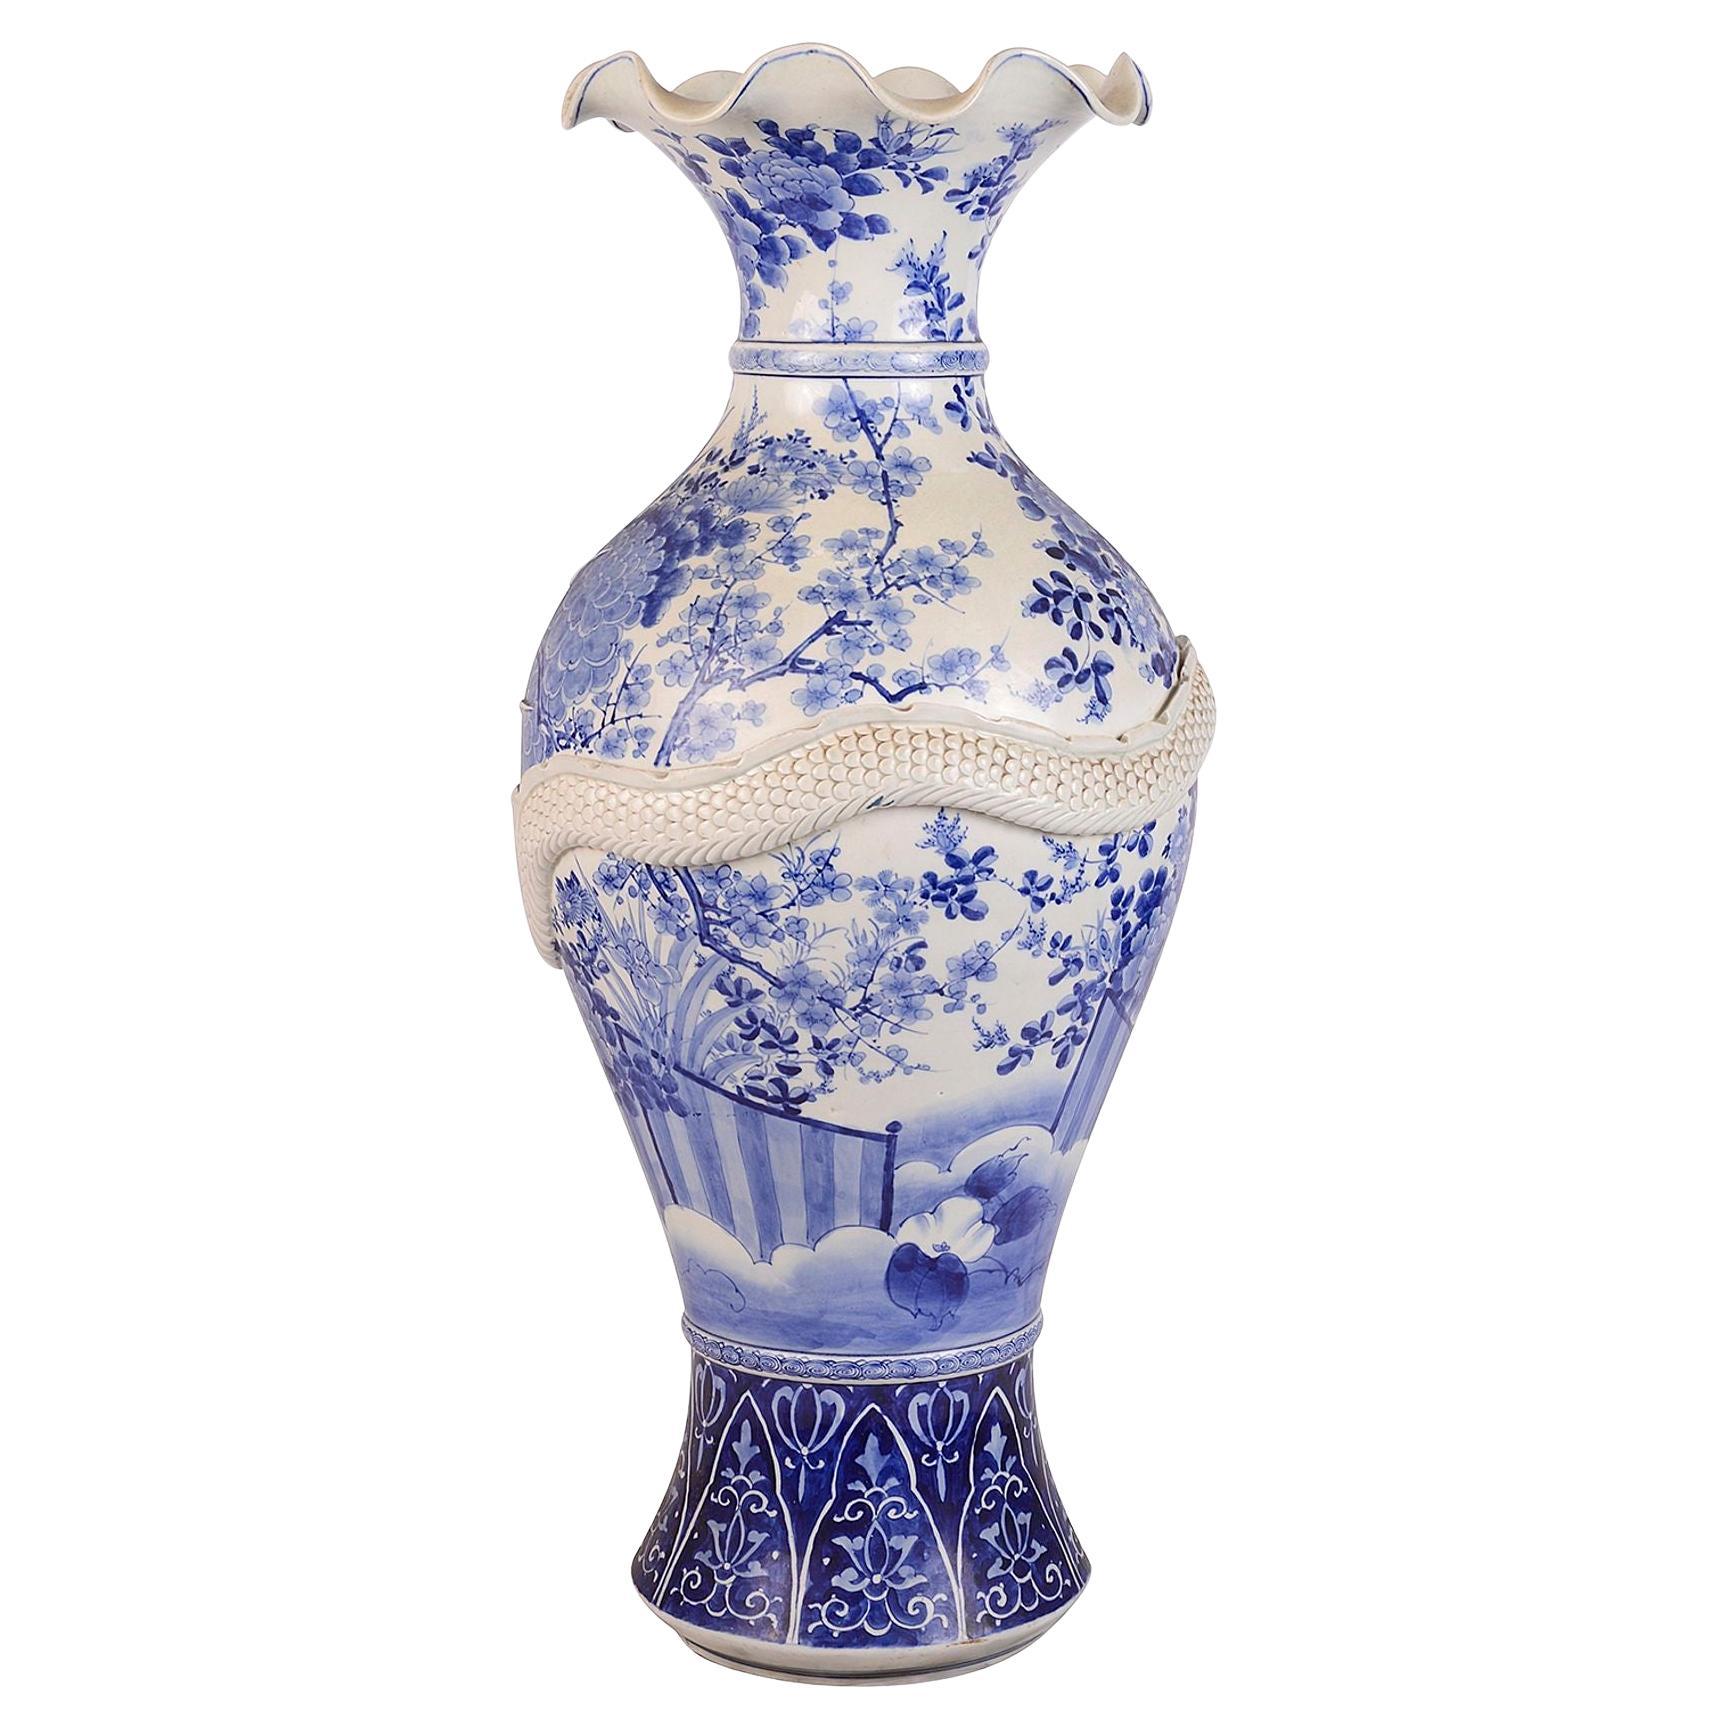 A sublime Nineteenth century Japanese vase by Makuzu Kozan